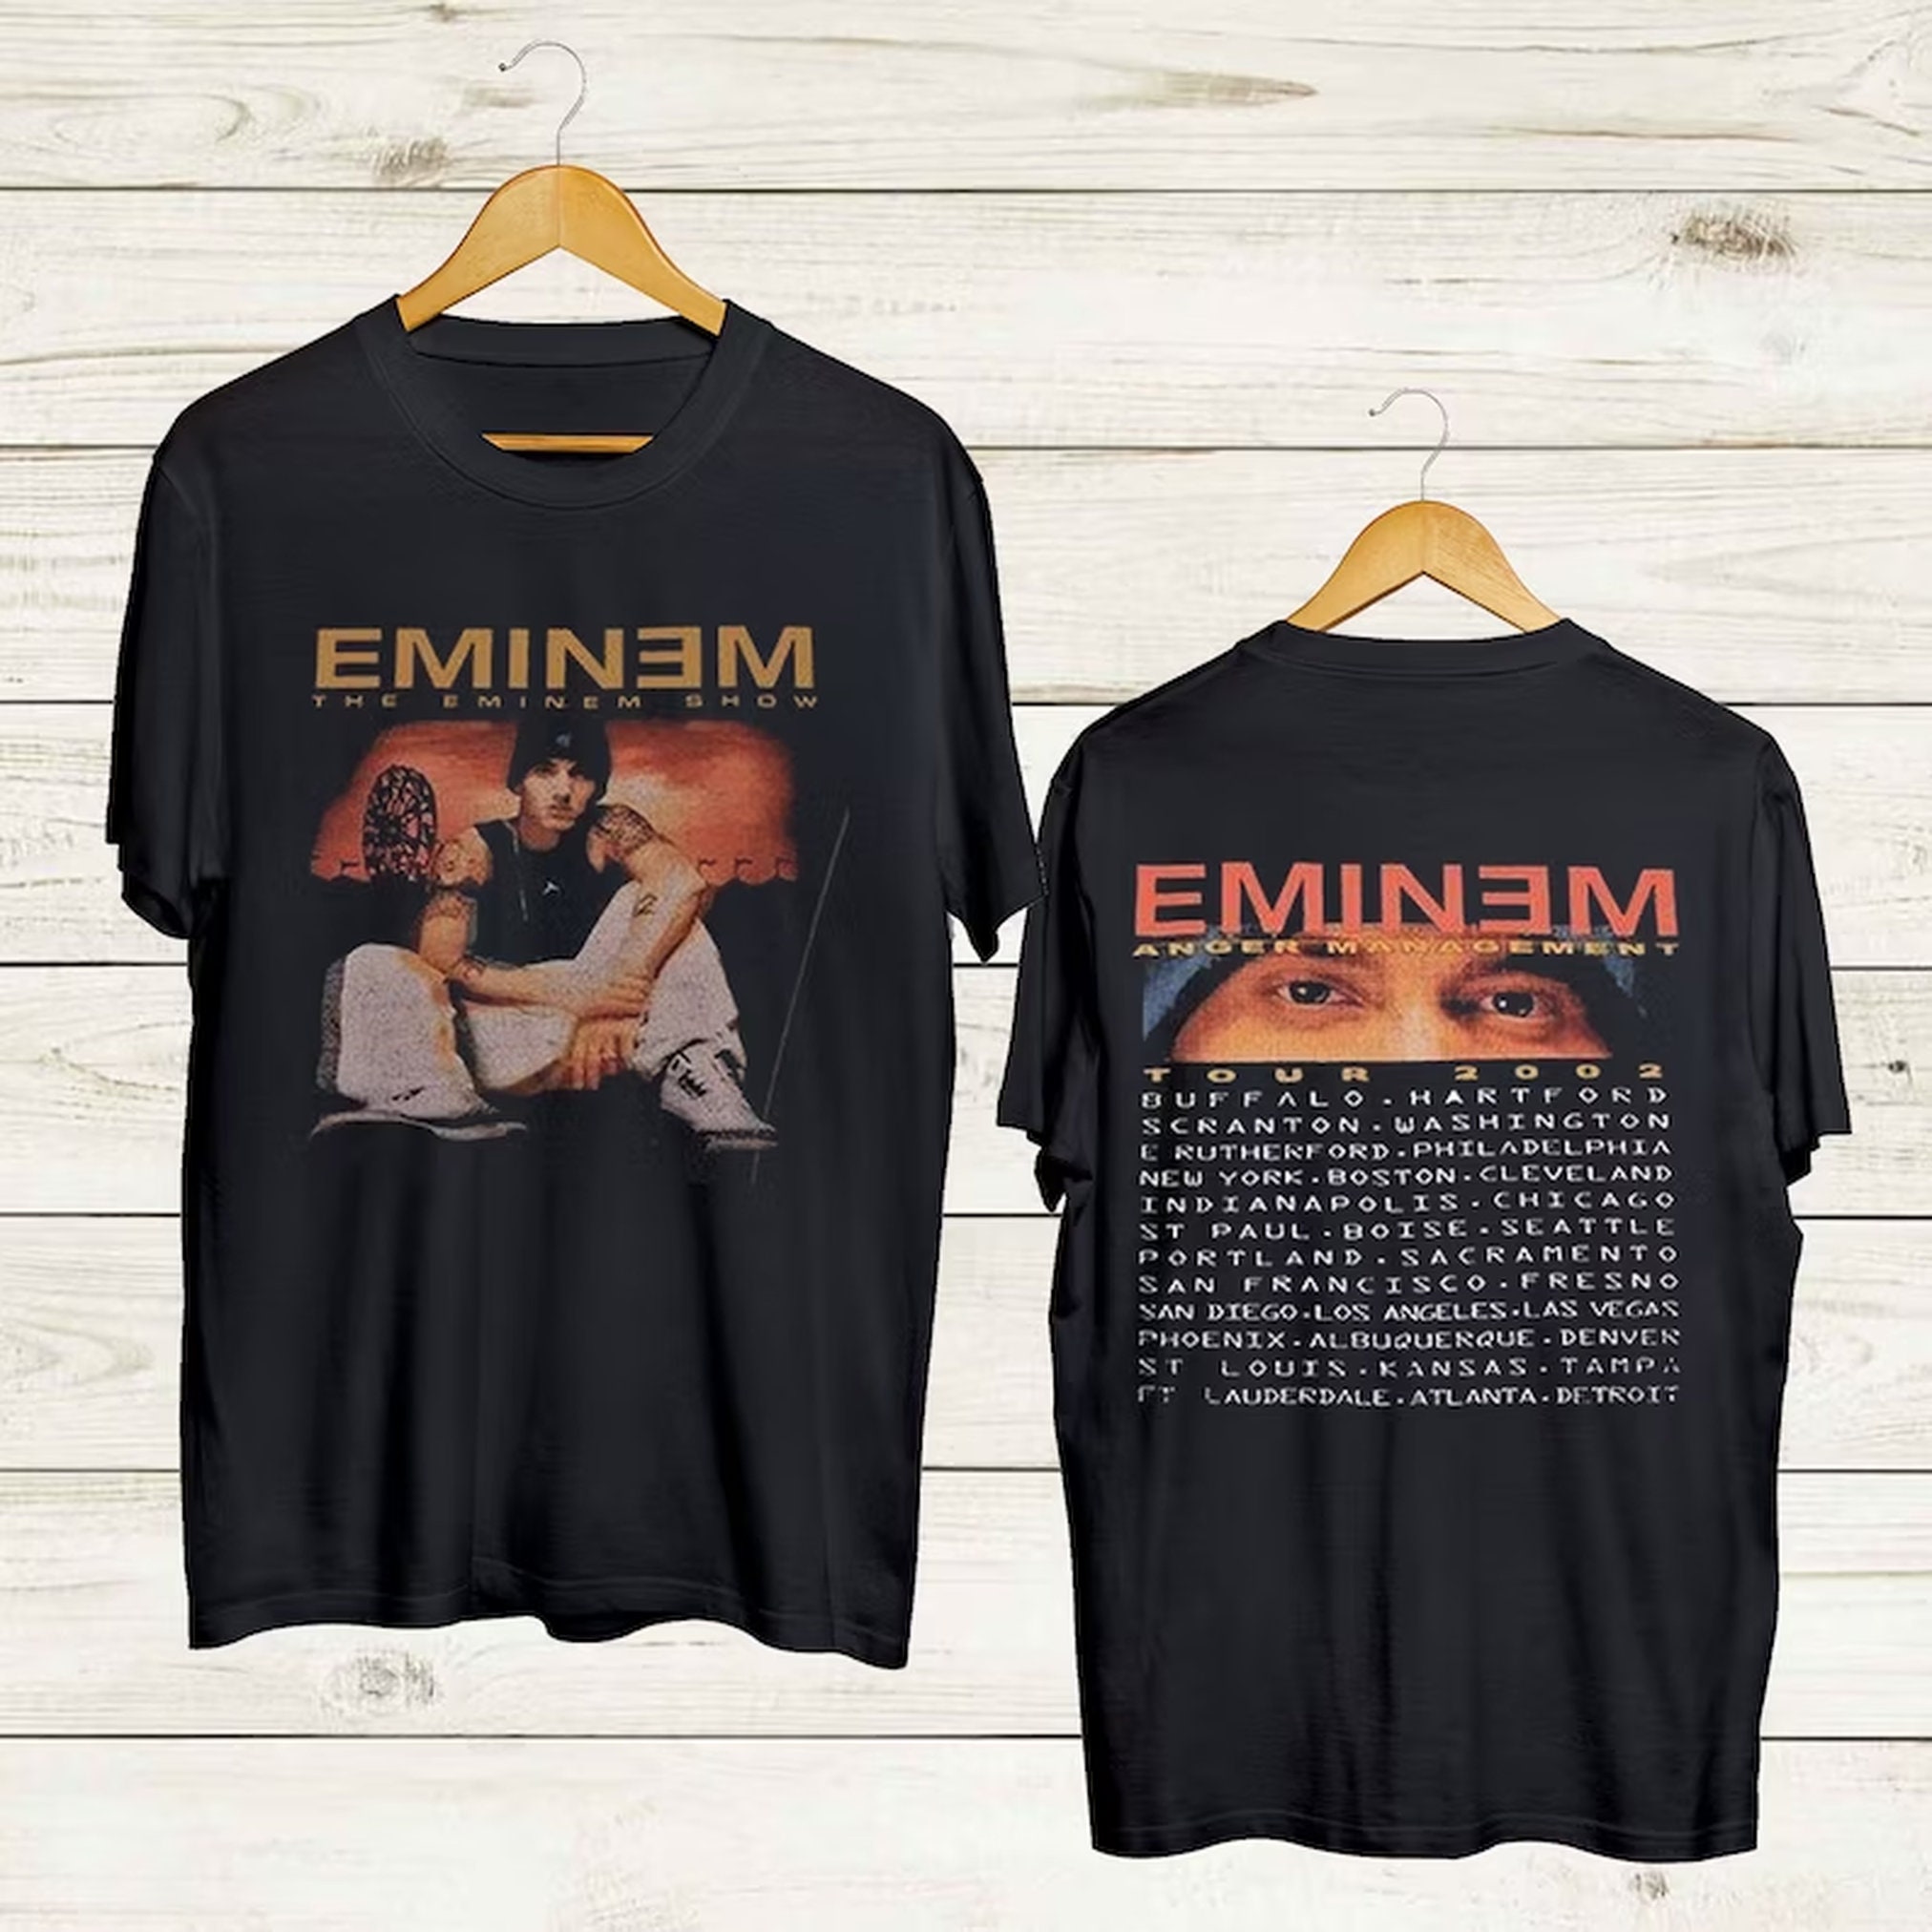 新品HOT レア The Eminem Show Tour Tee L エミネム Tシャツ h9YbO-m48105832857 